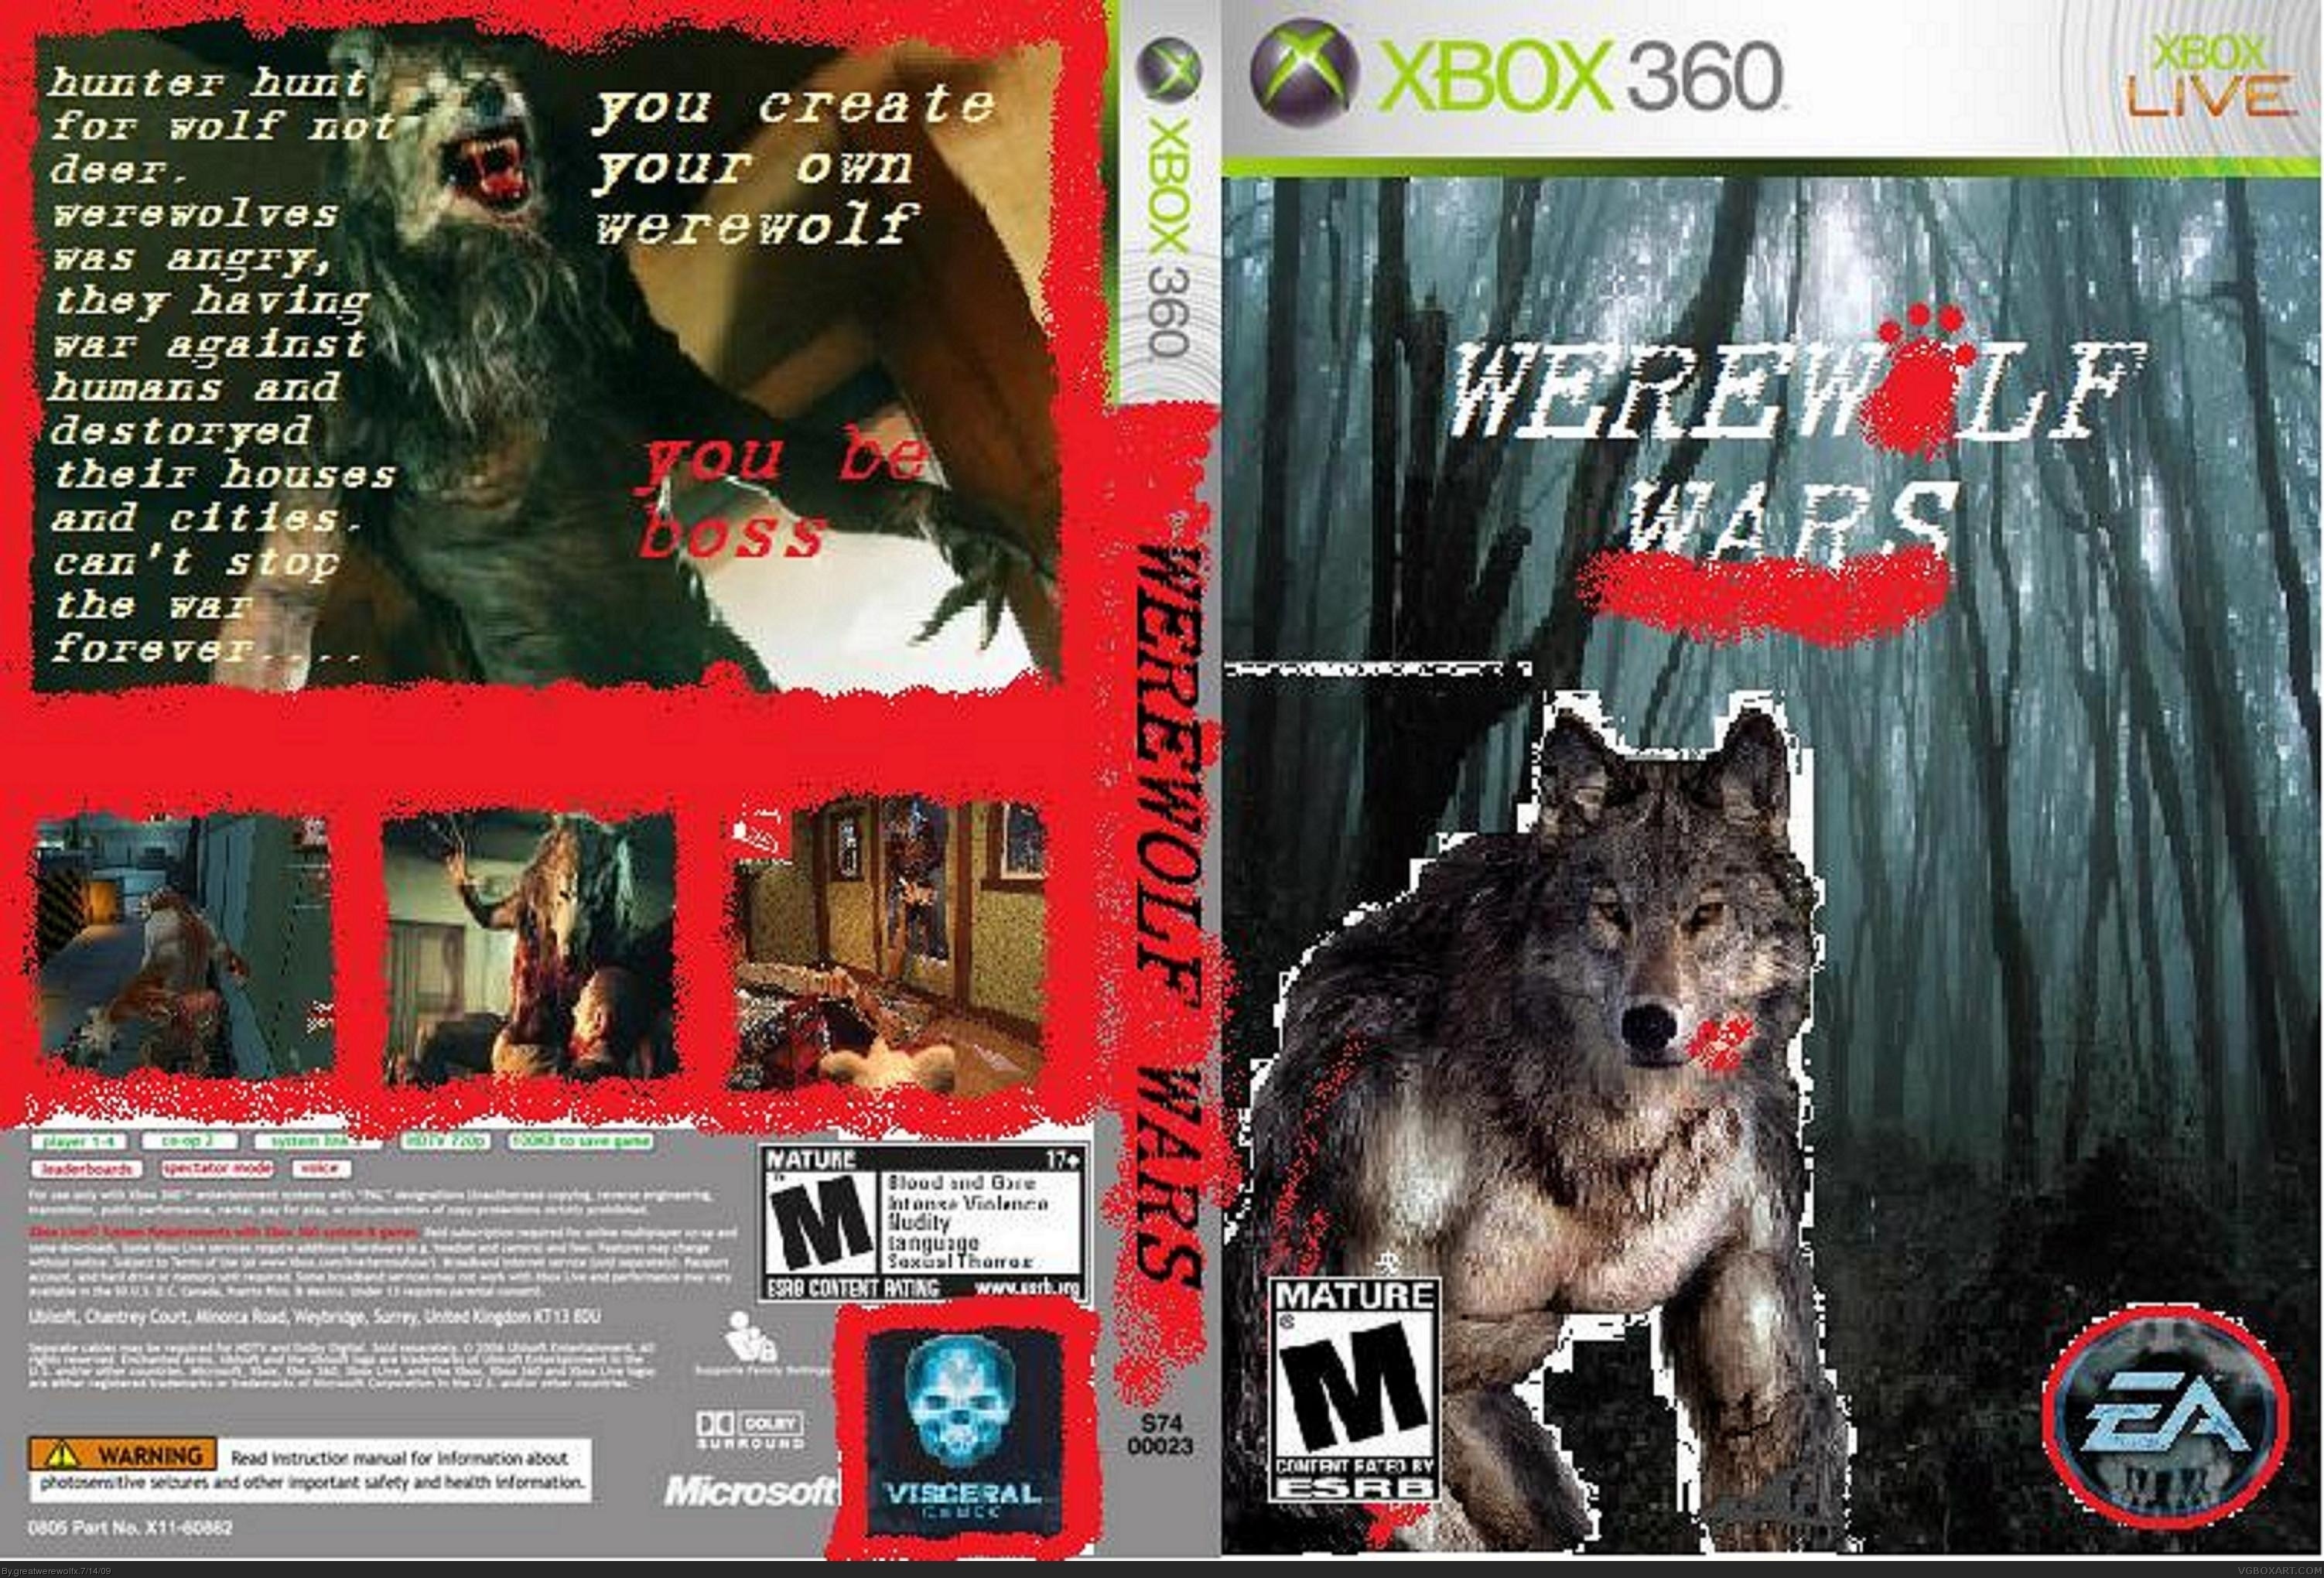 Werewolf Wars box cover